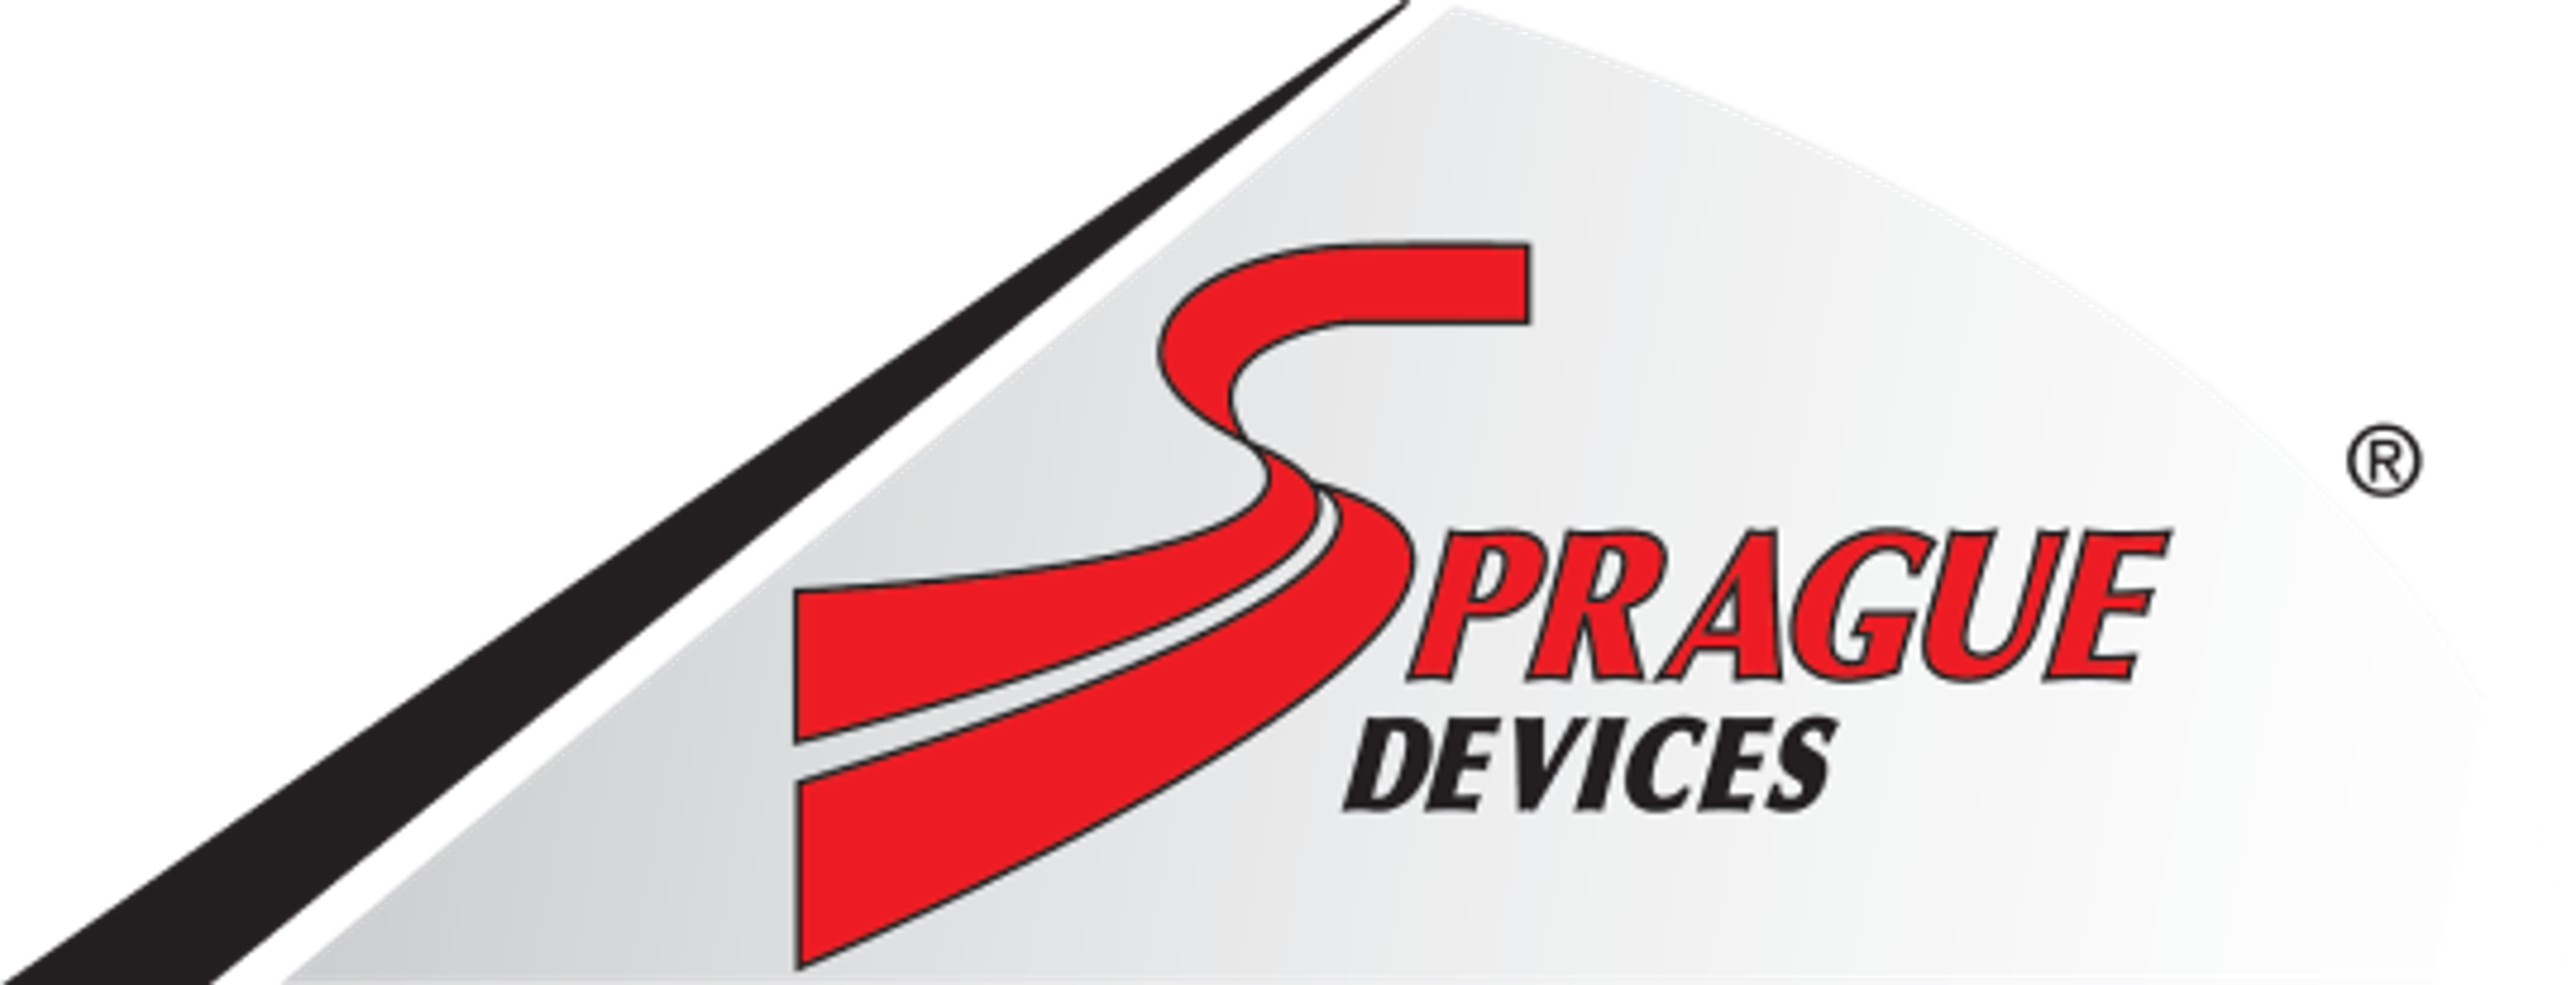 Sprague Devices logo